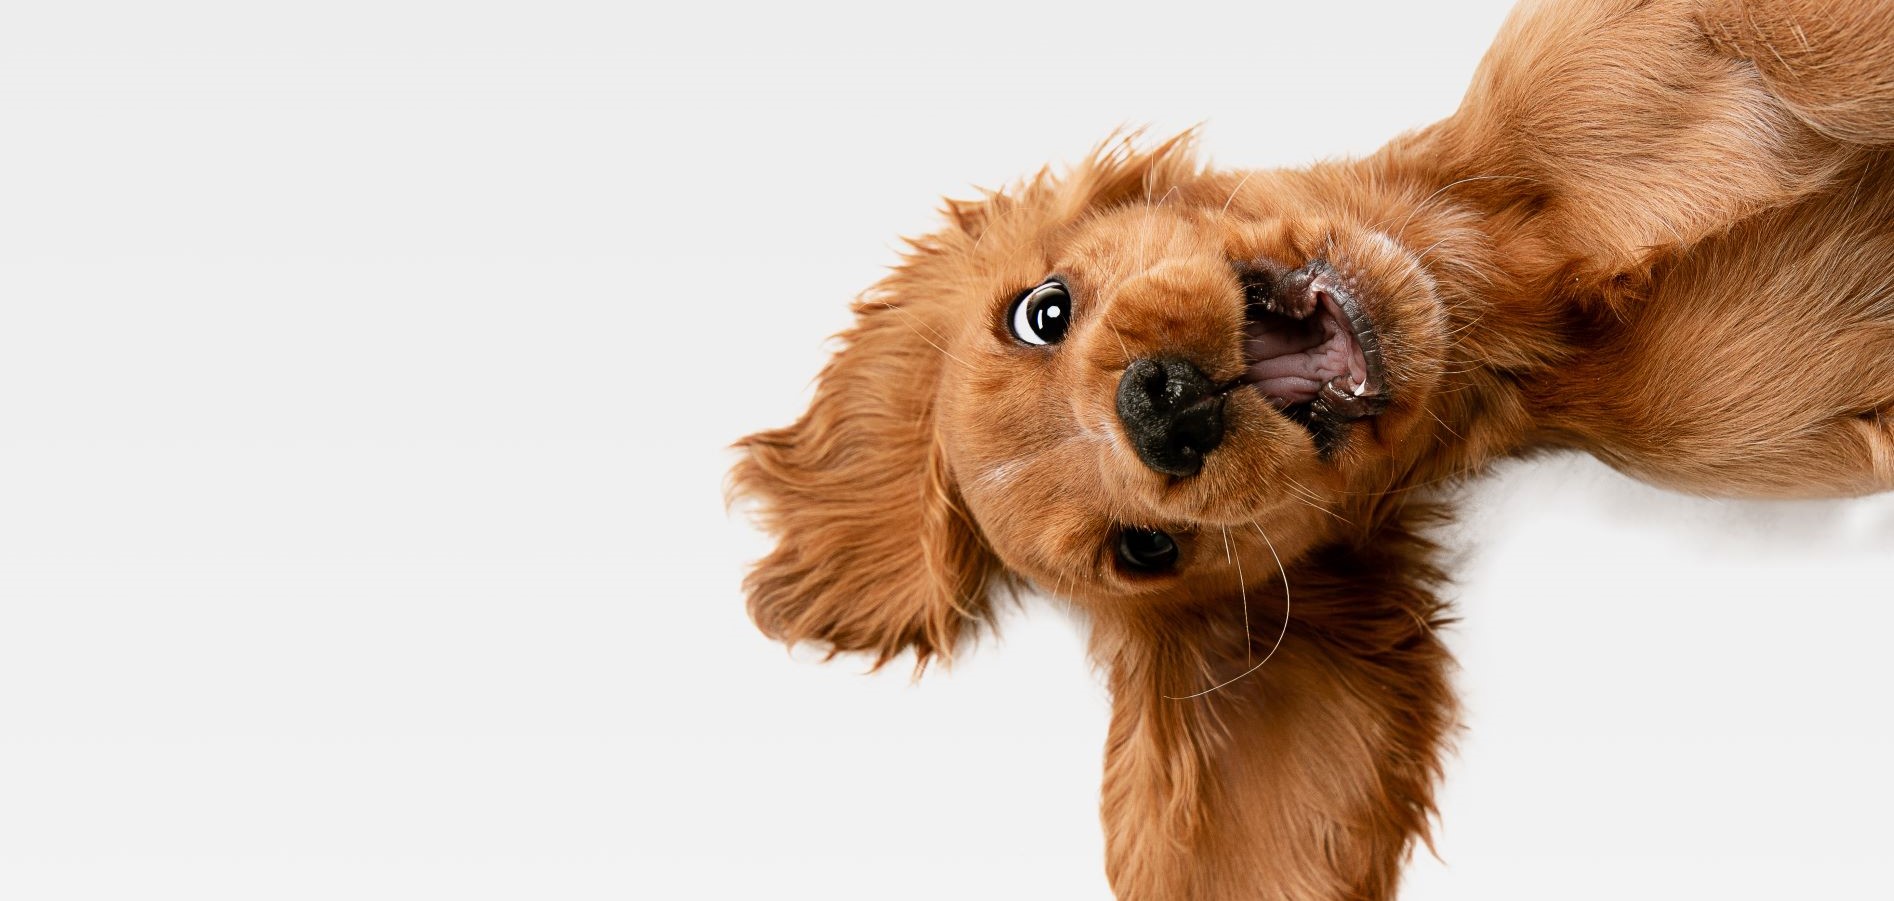 Rutina de cepillado de un perro: cómo hacerla paso a paso